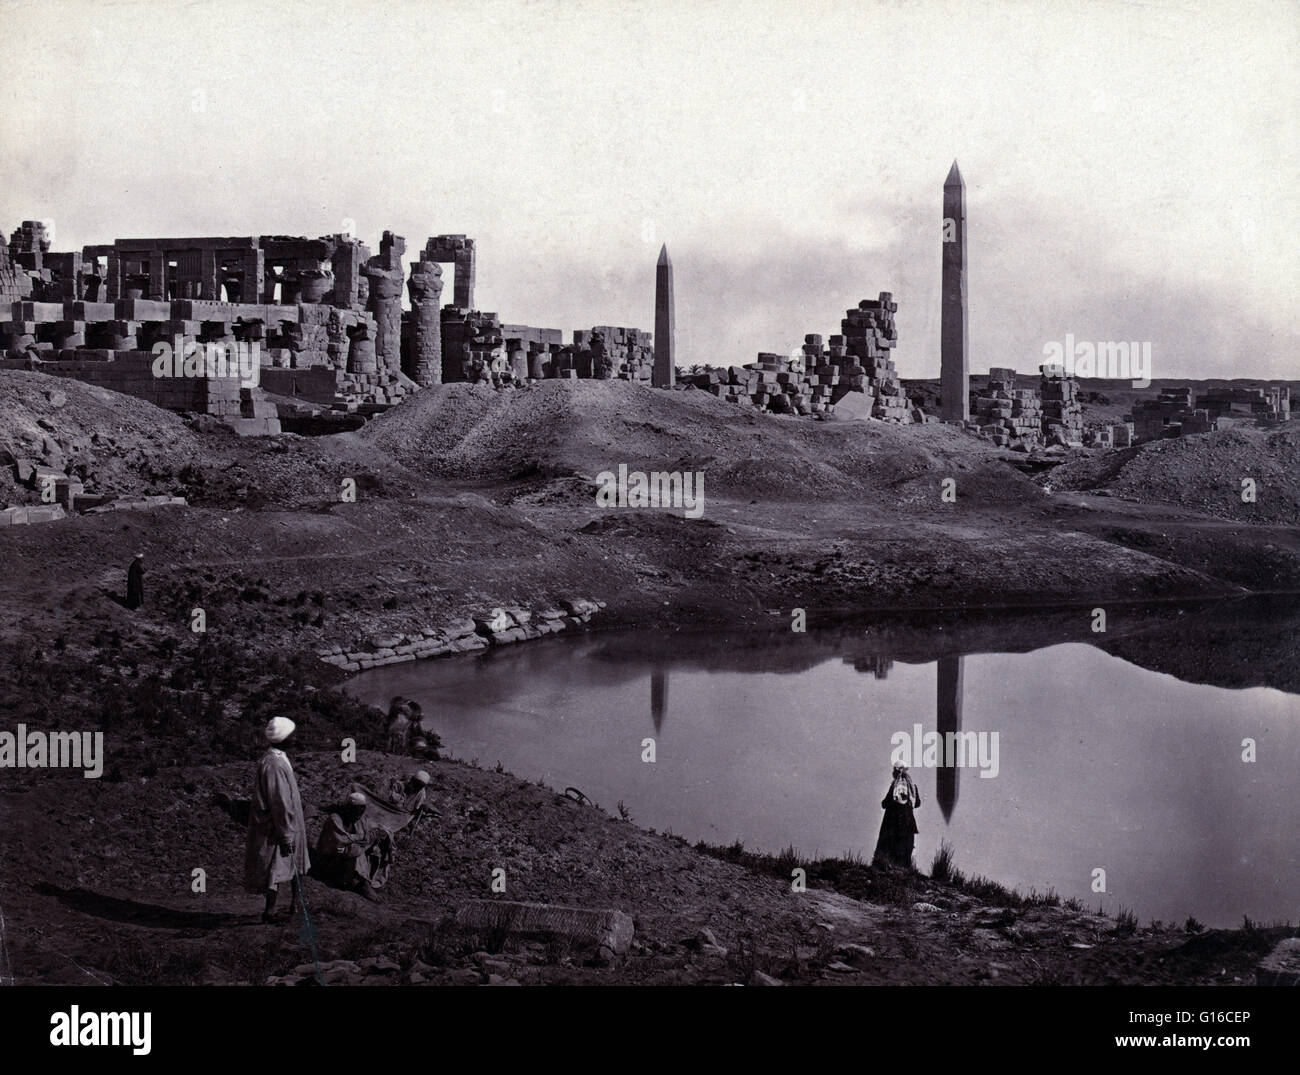 Titulado: "Las ruinas de la Gran Sala y dos obeliscos. Carnac." La gran sala hipóstila salen de Karnak, ubicado dentro del complejo del templo de Karnak, en el recinto de Amon-Re, es uno de los monumentos más visitados del Antiguo Egipto. Fue construido alrededor del diecinueveavo Egy Foto de stock